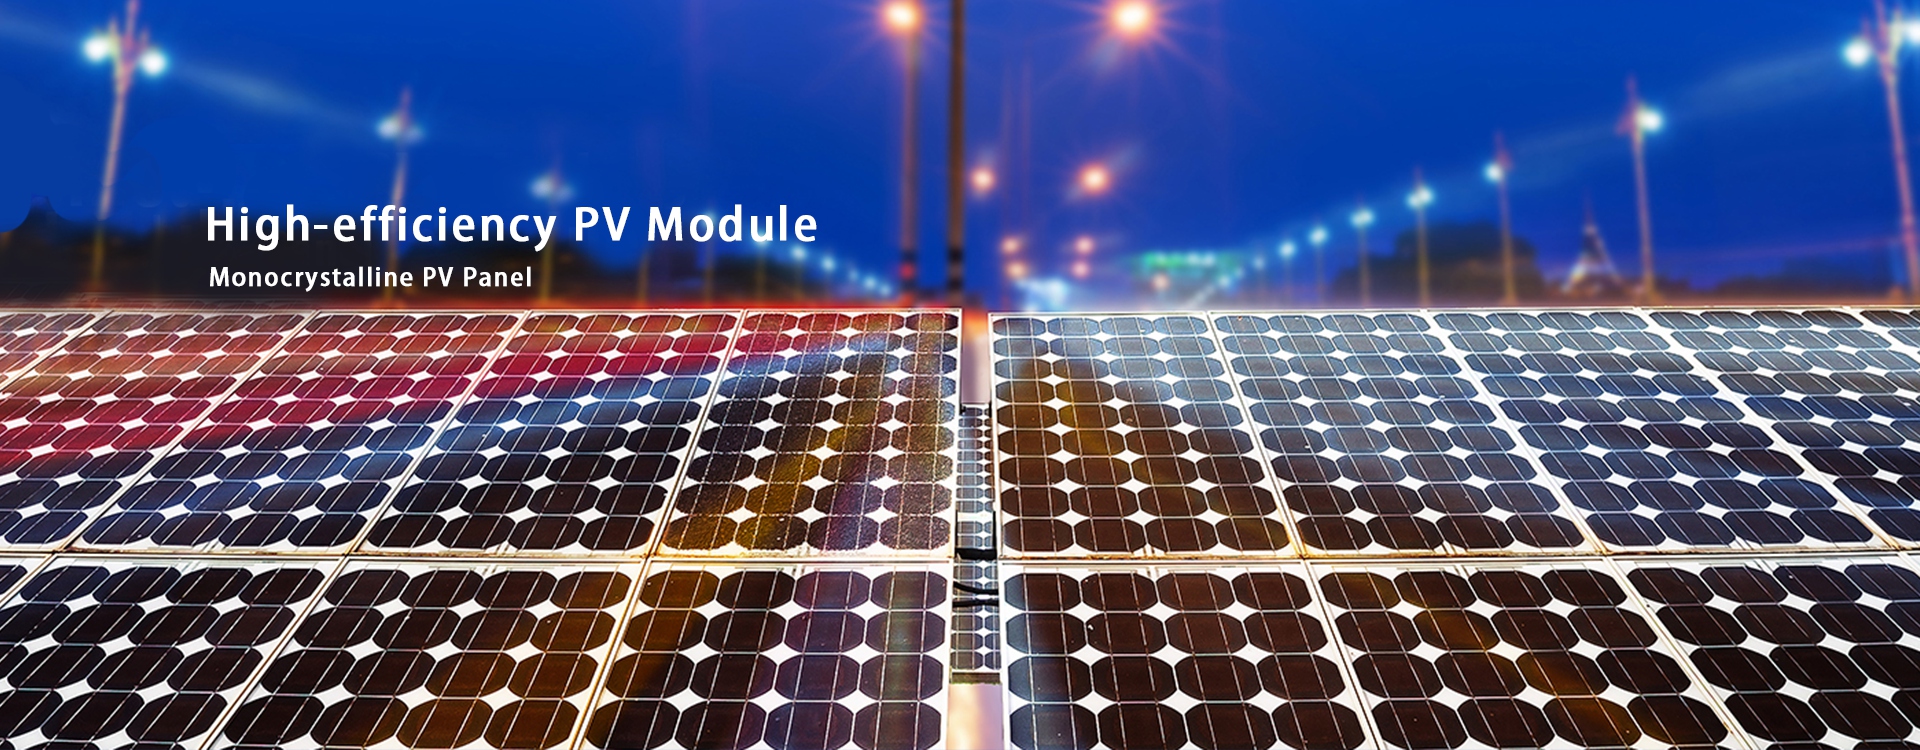 Panel fotovoltaico monocristalino de módulo fotovoltaico de alta eficiencia